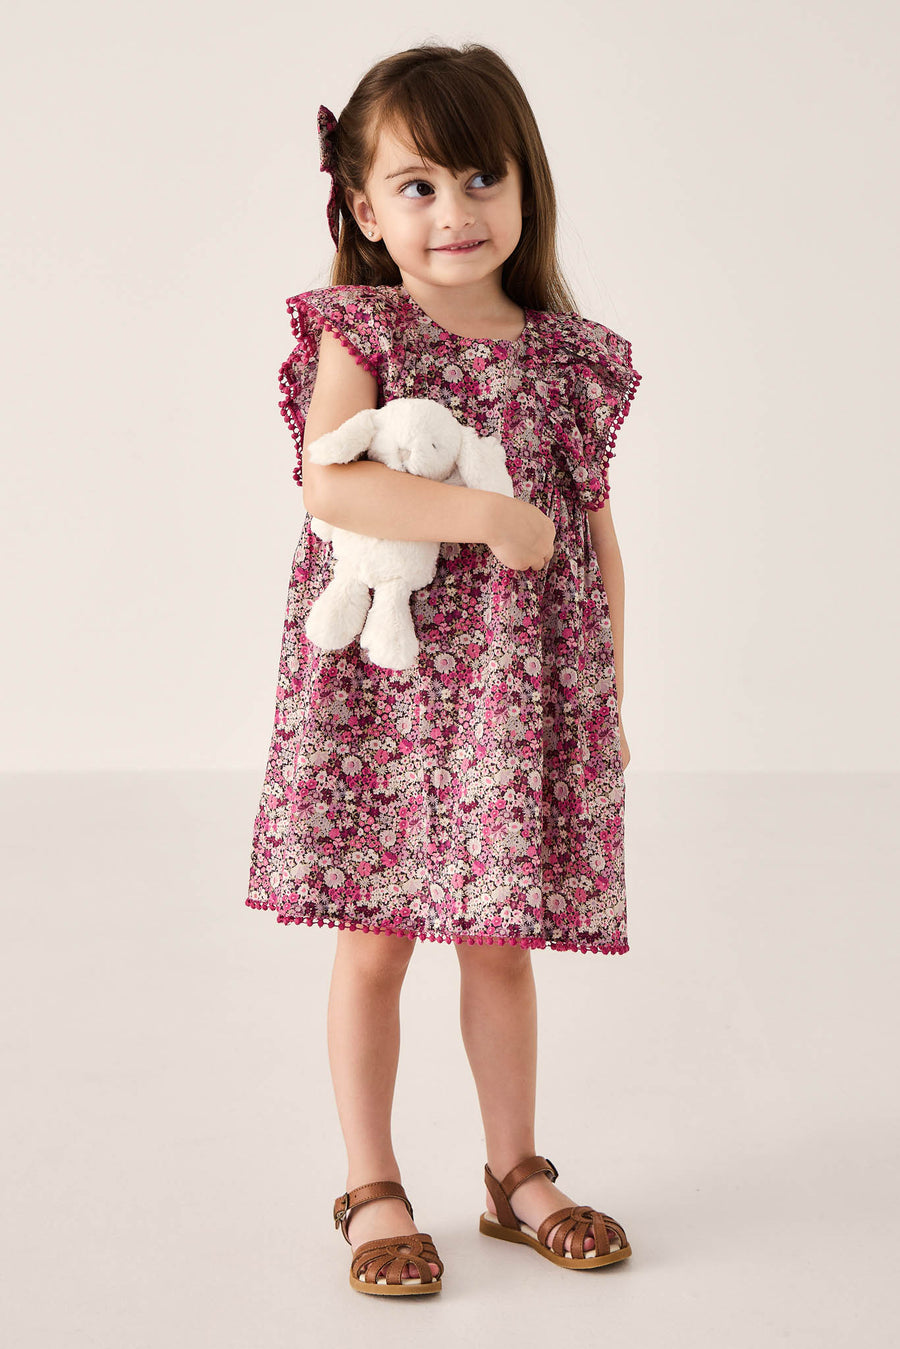 Organic Cotton Gabrielle Dress - Garden Print Childrens Dress from Jamie Kay NZ